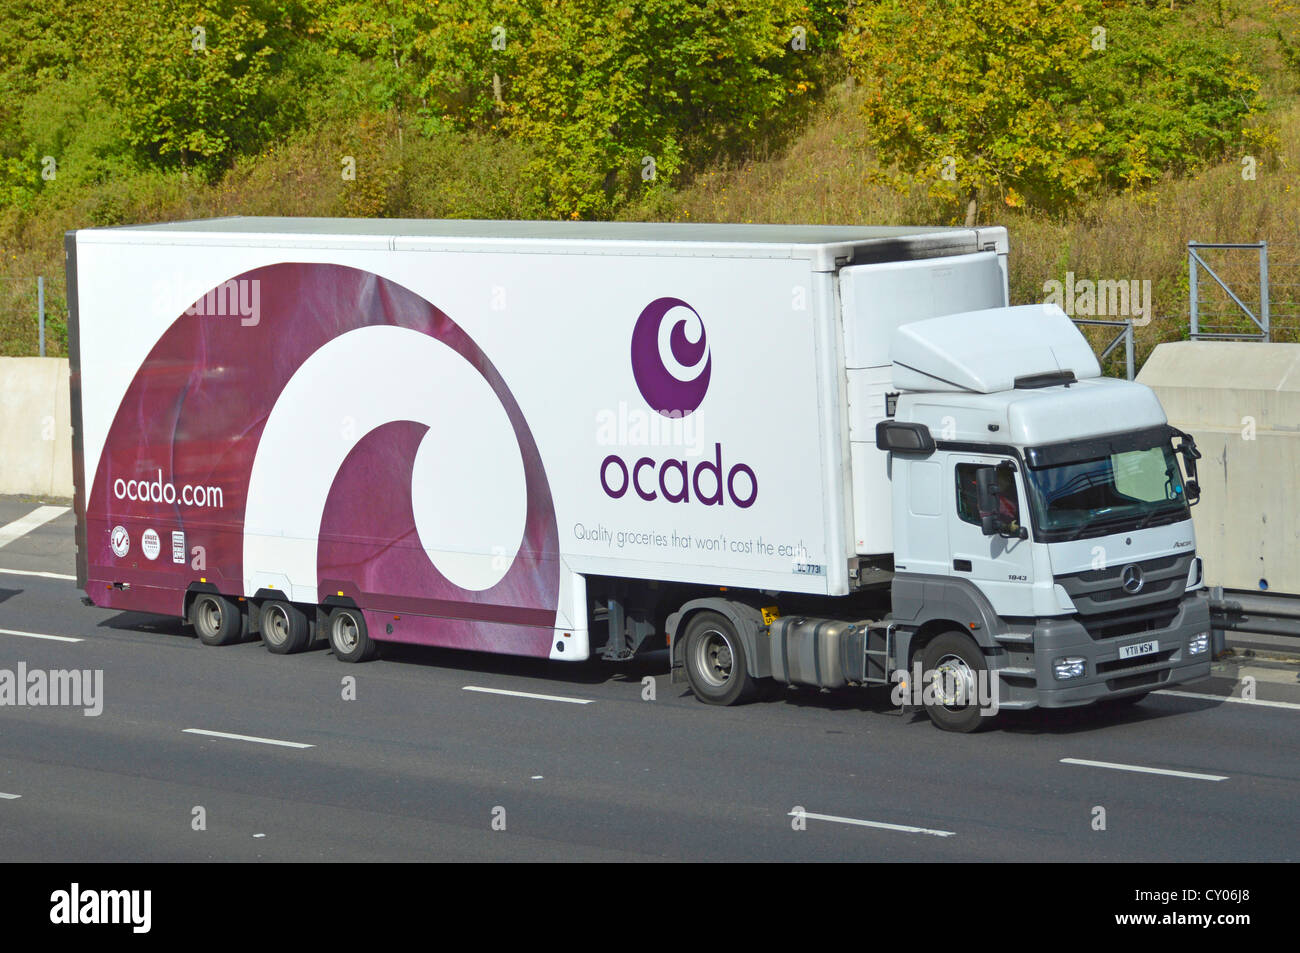 Ocado, seitlich gesehen, weißer Lebensmittelanhänger mit lilafarbener Grafik und seitlicher Vorderseite des mercedes Lieferwagens, der auf der englischen britischen Autobahn fährt Stockfoto